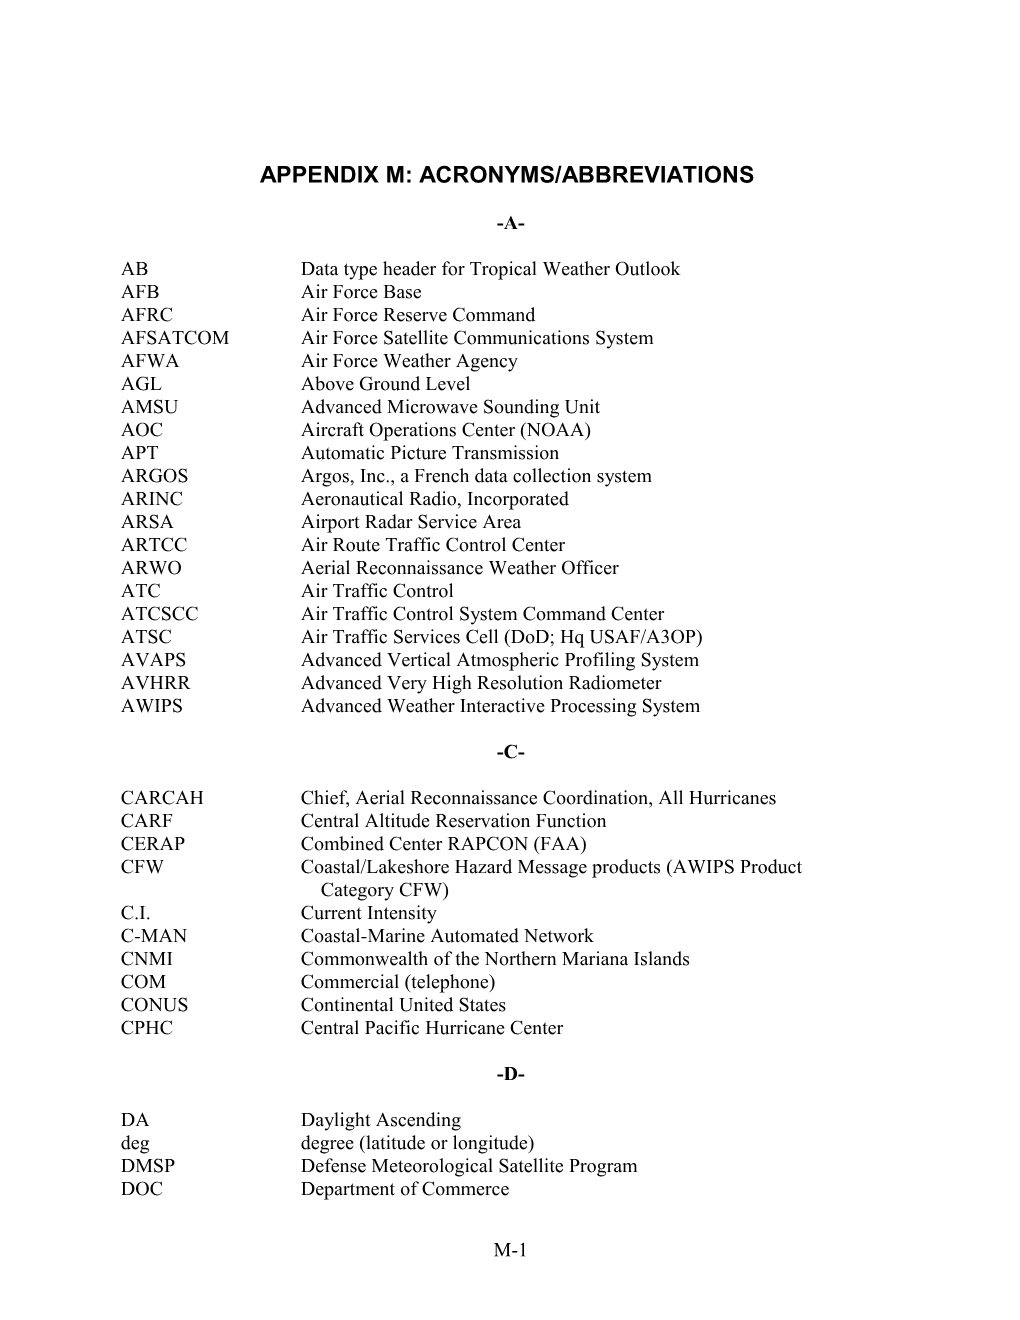 Appendix L Acronyms/Abbreviations